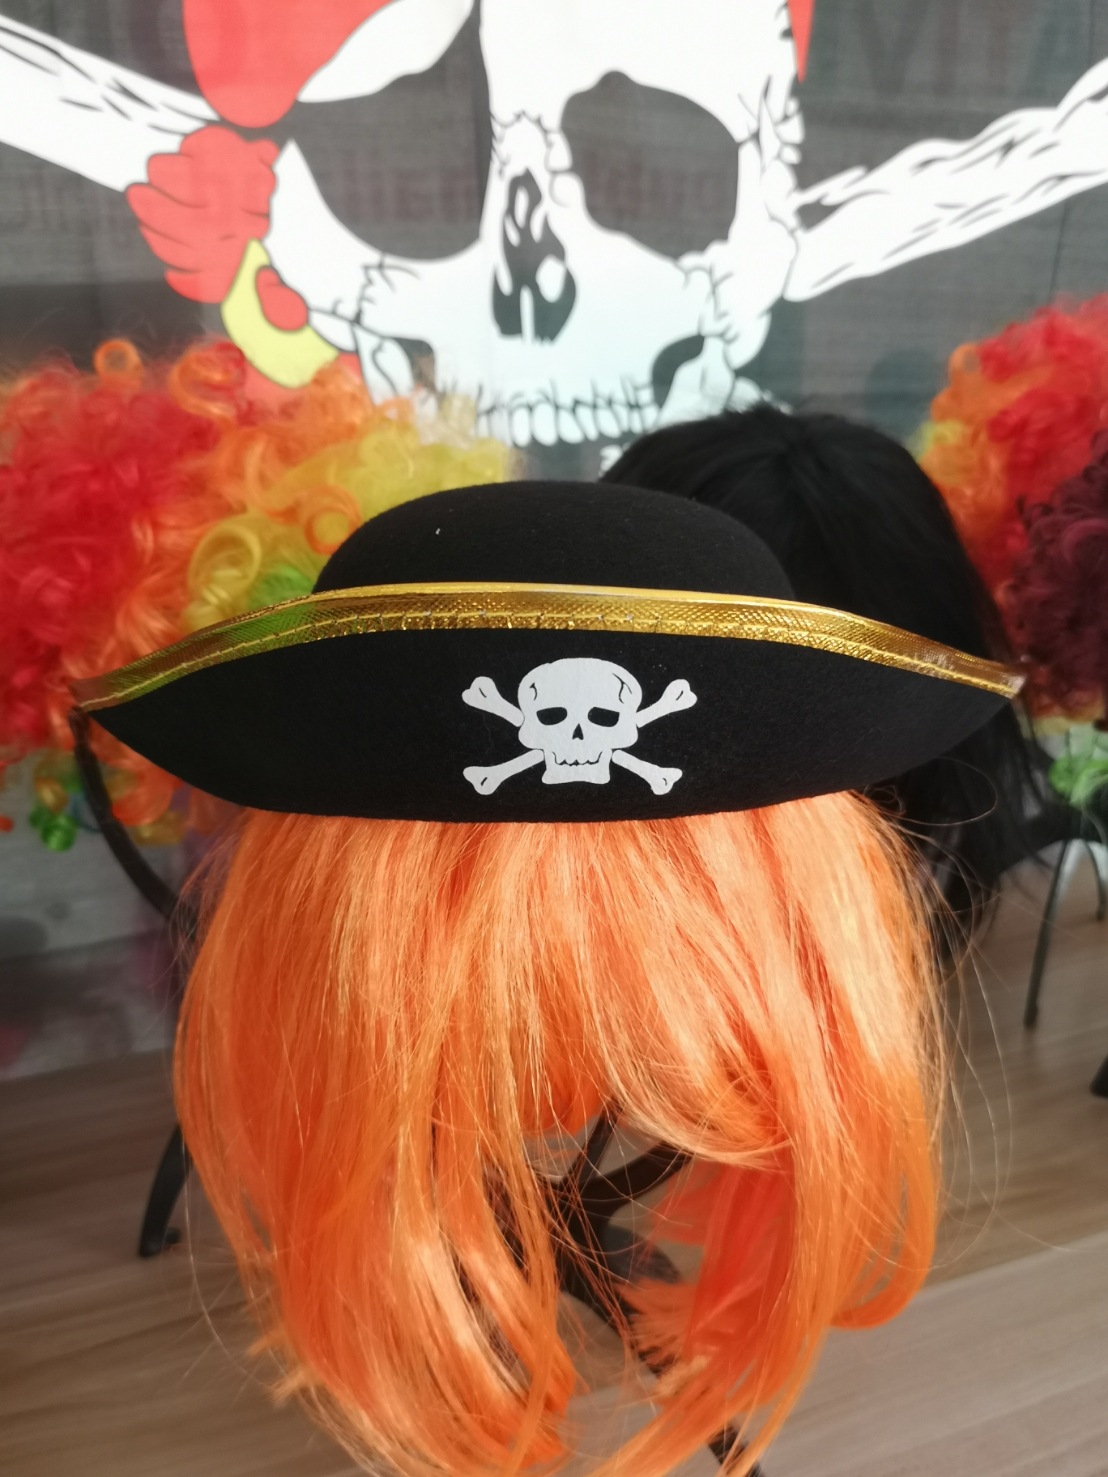 หมวกโจรสลัด หมวกไพเรท ชุด หมวก โจรสลัด ไพเรท พร็อพโจรสลัด พร็อพไพเรท พร็อพ แฟนซี ปาร์ตี้ Pirate Hat Prop Fancy party costume